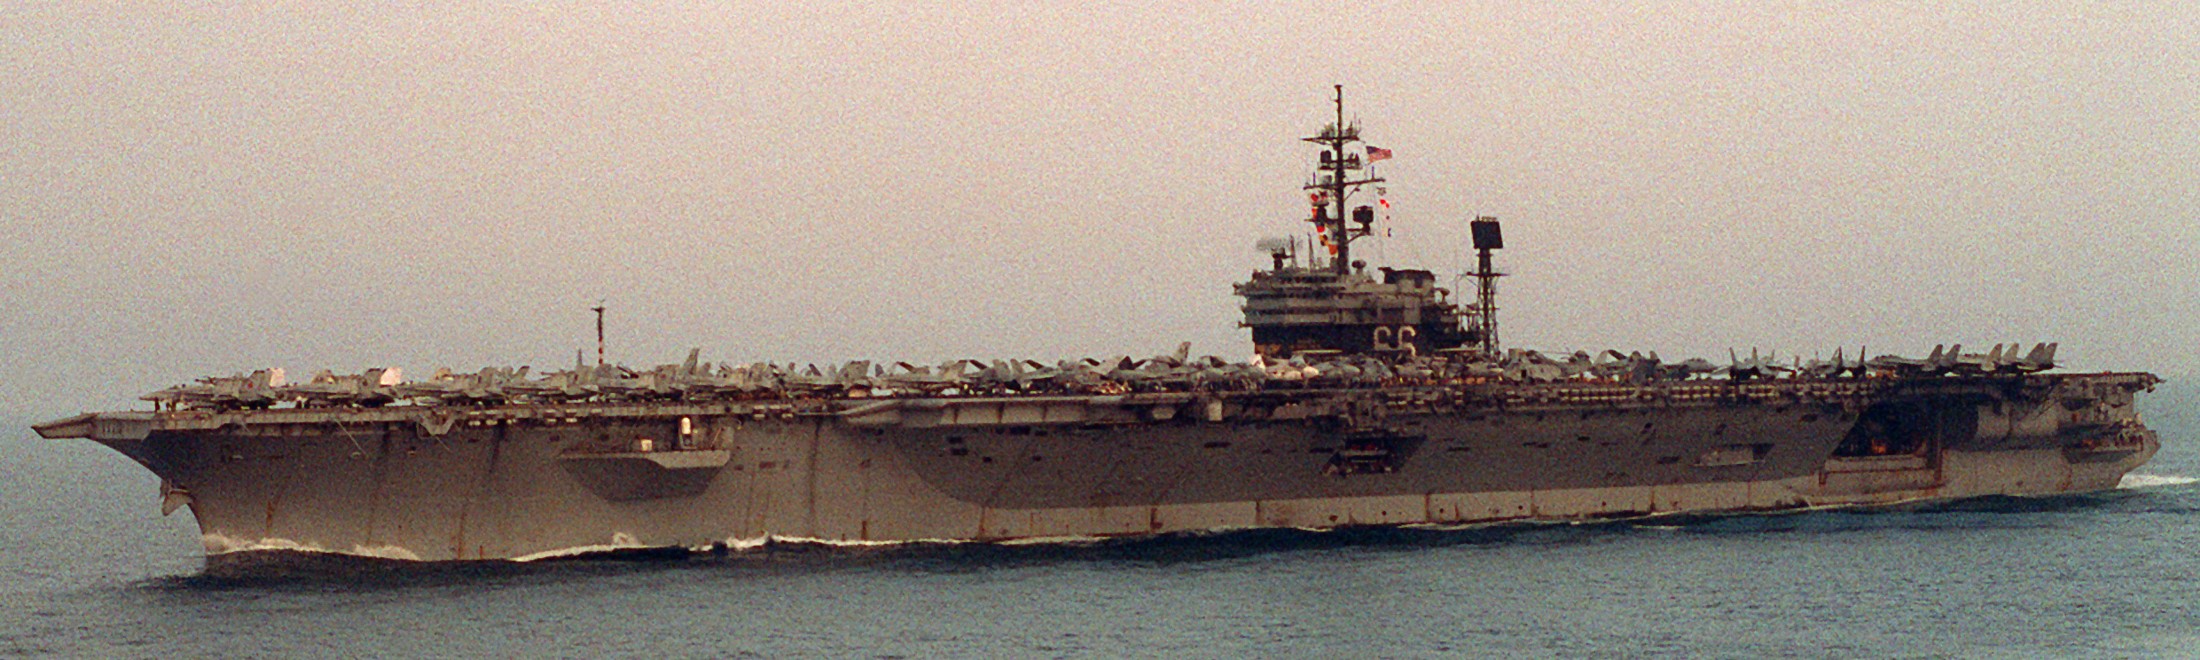 cv-66 uss america kitty hawk class aircraft carrier air wing cvw-1 us navy desert storm 1991 97